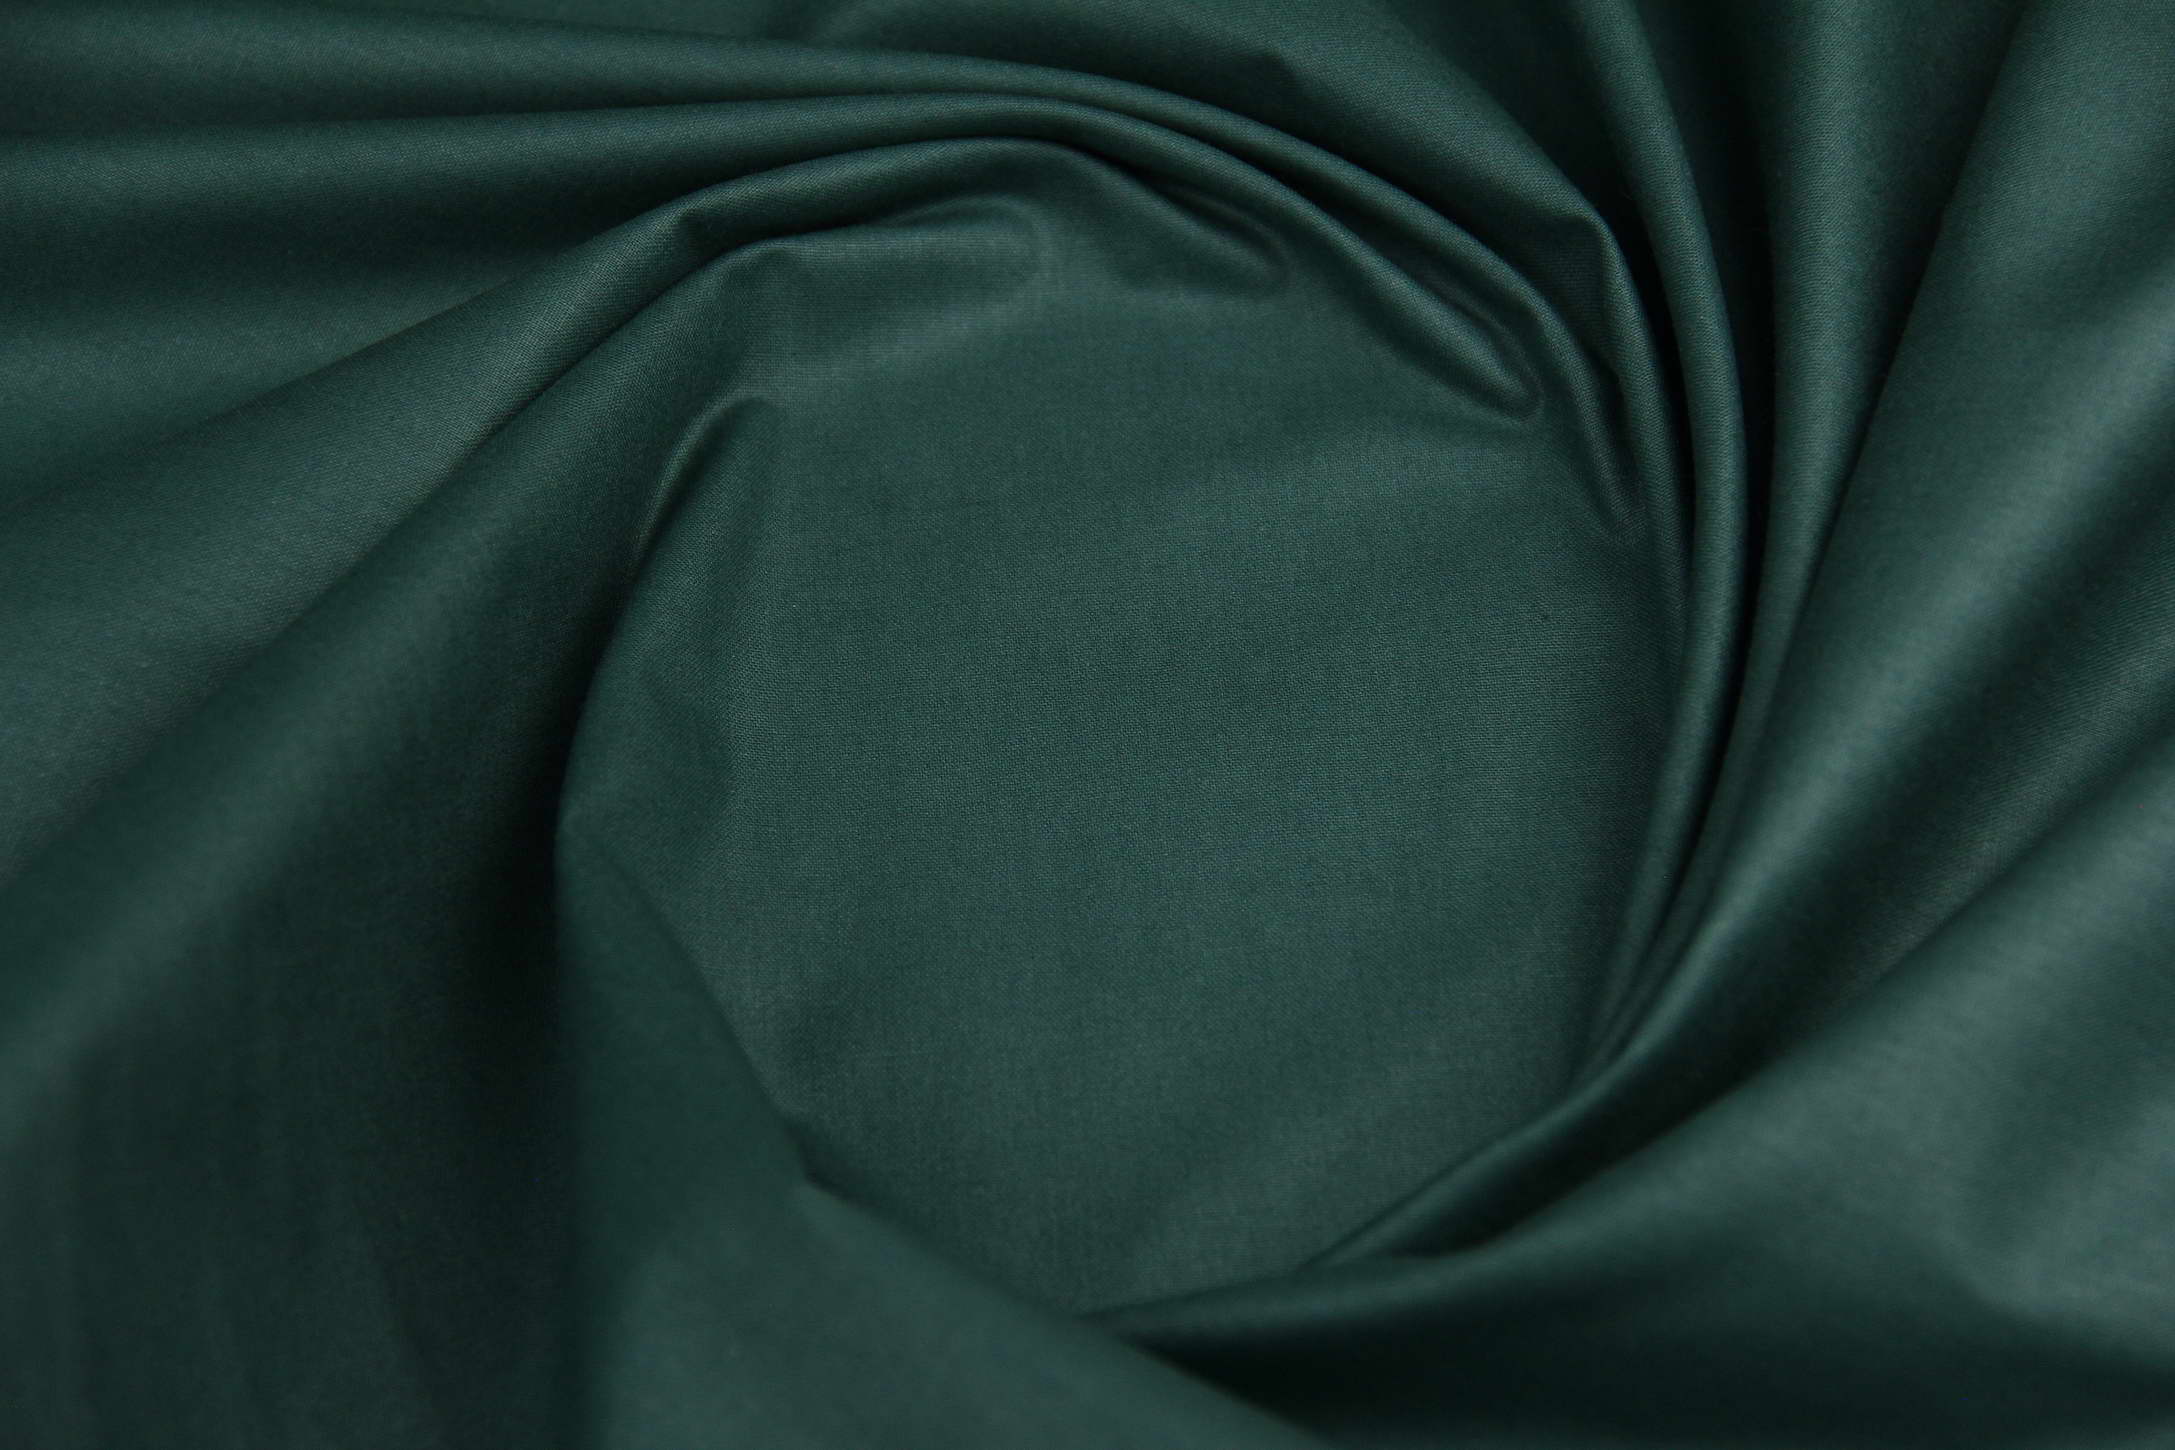 Ткань Поплин PN91 Темно-зеленый, Турция, ширина 240 см, плотность 135 г/м2